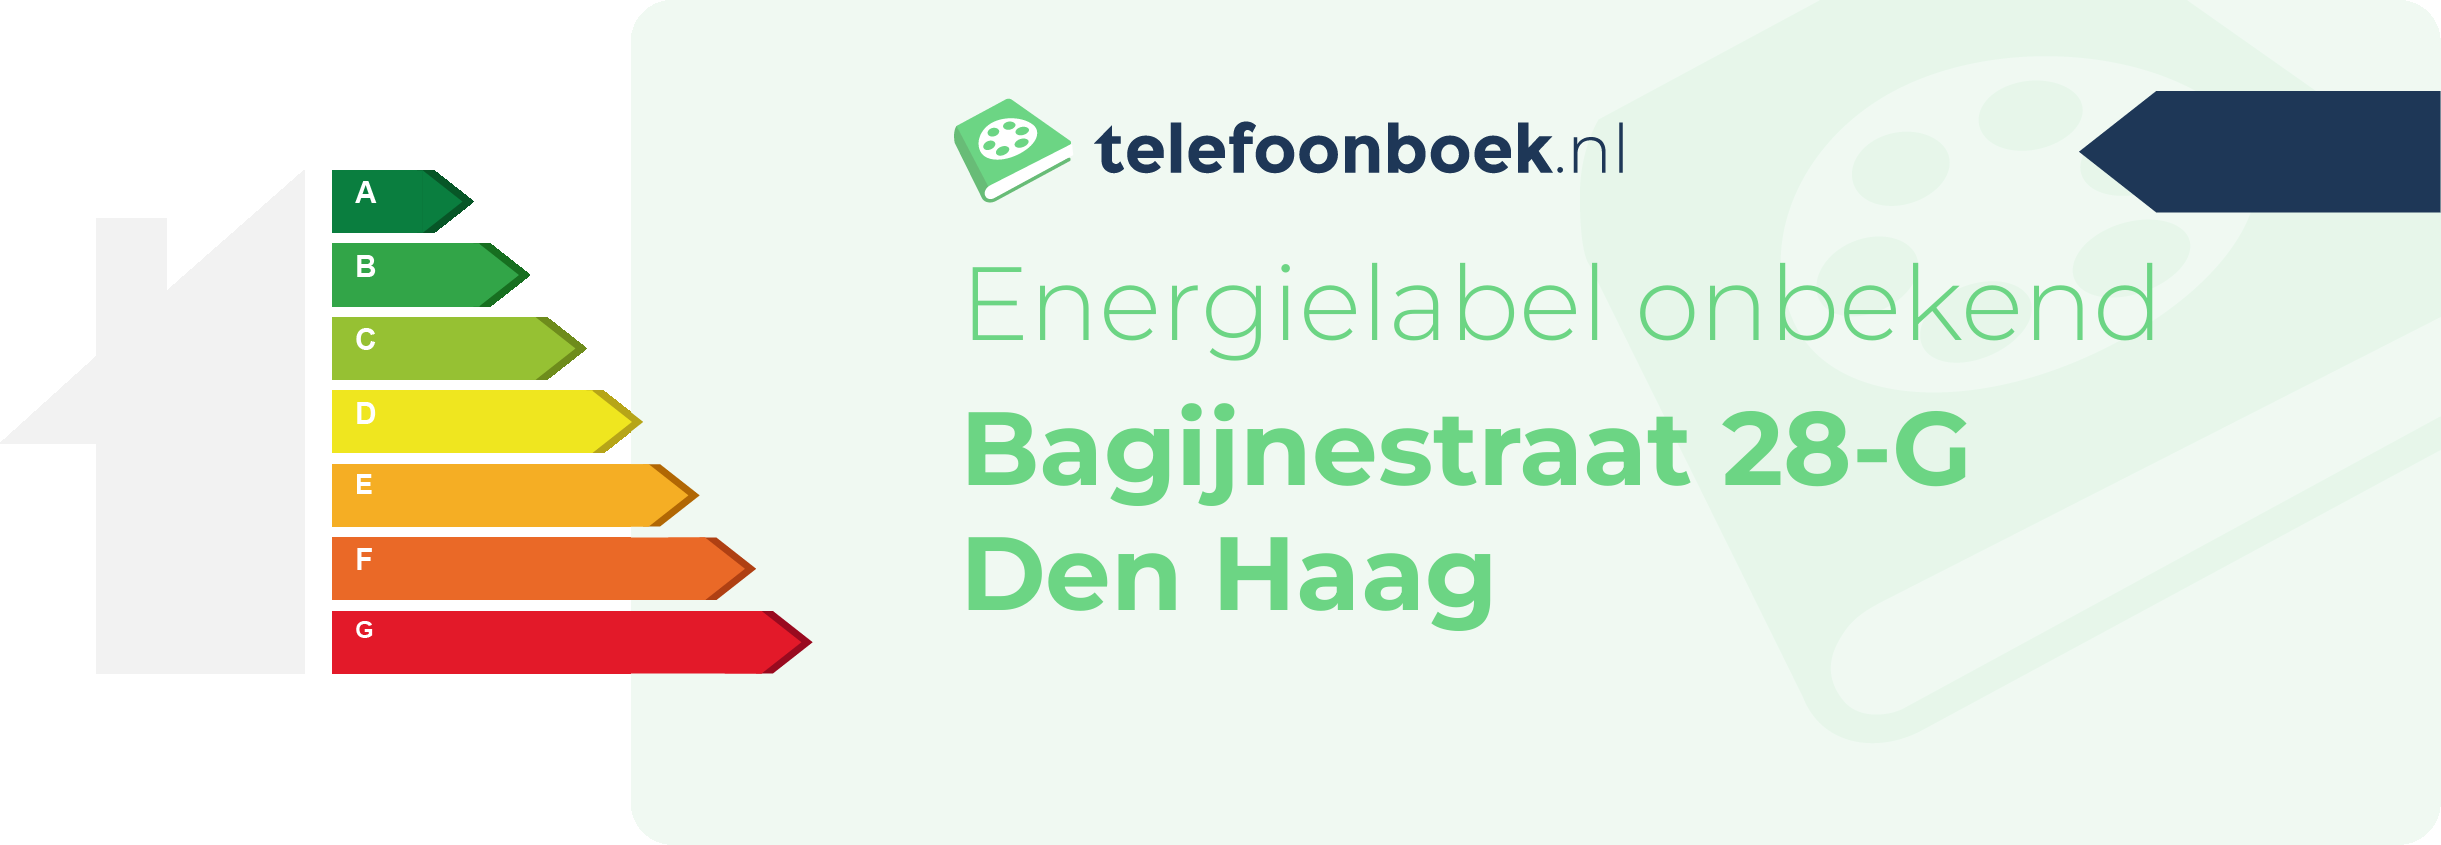 Energielabel Bagijnestraat 28-G Den Haag